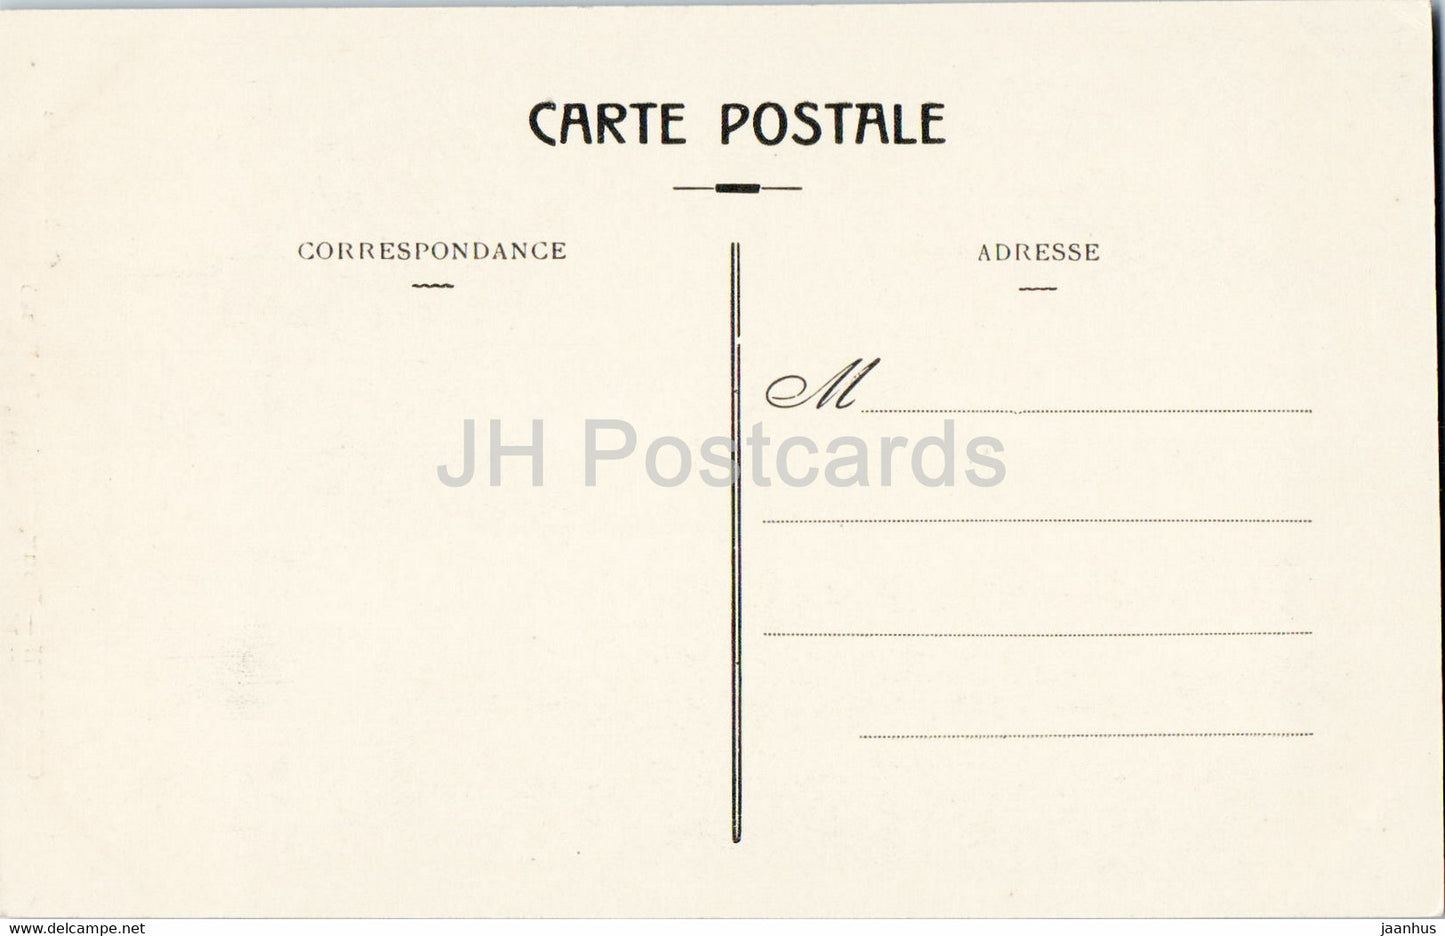 Cogolin - Deux temoins du Passe Vieux Moulin et Vieille Tour - old postcard - 1916 - France - unused